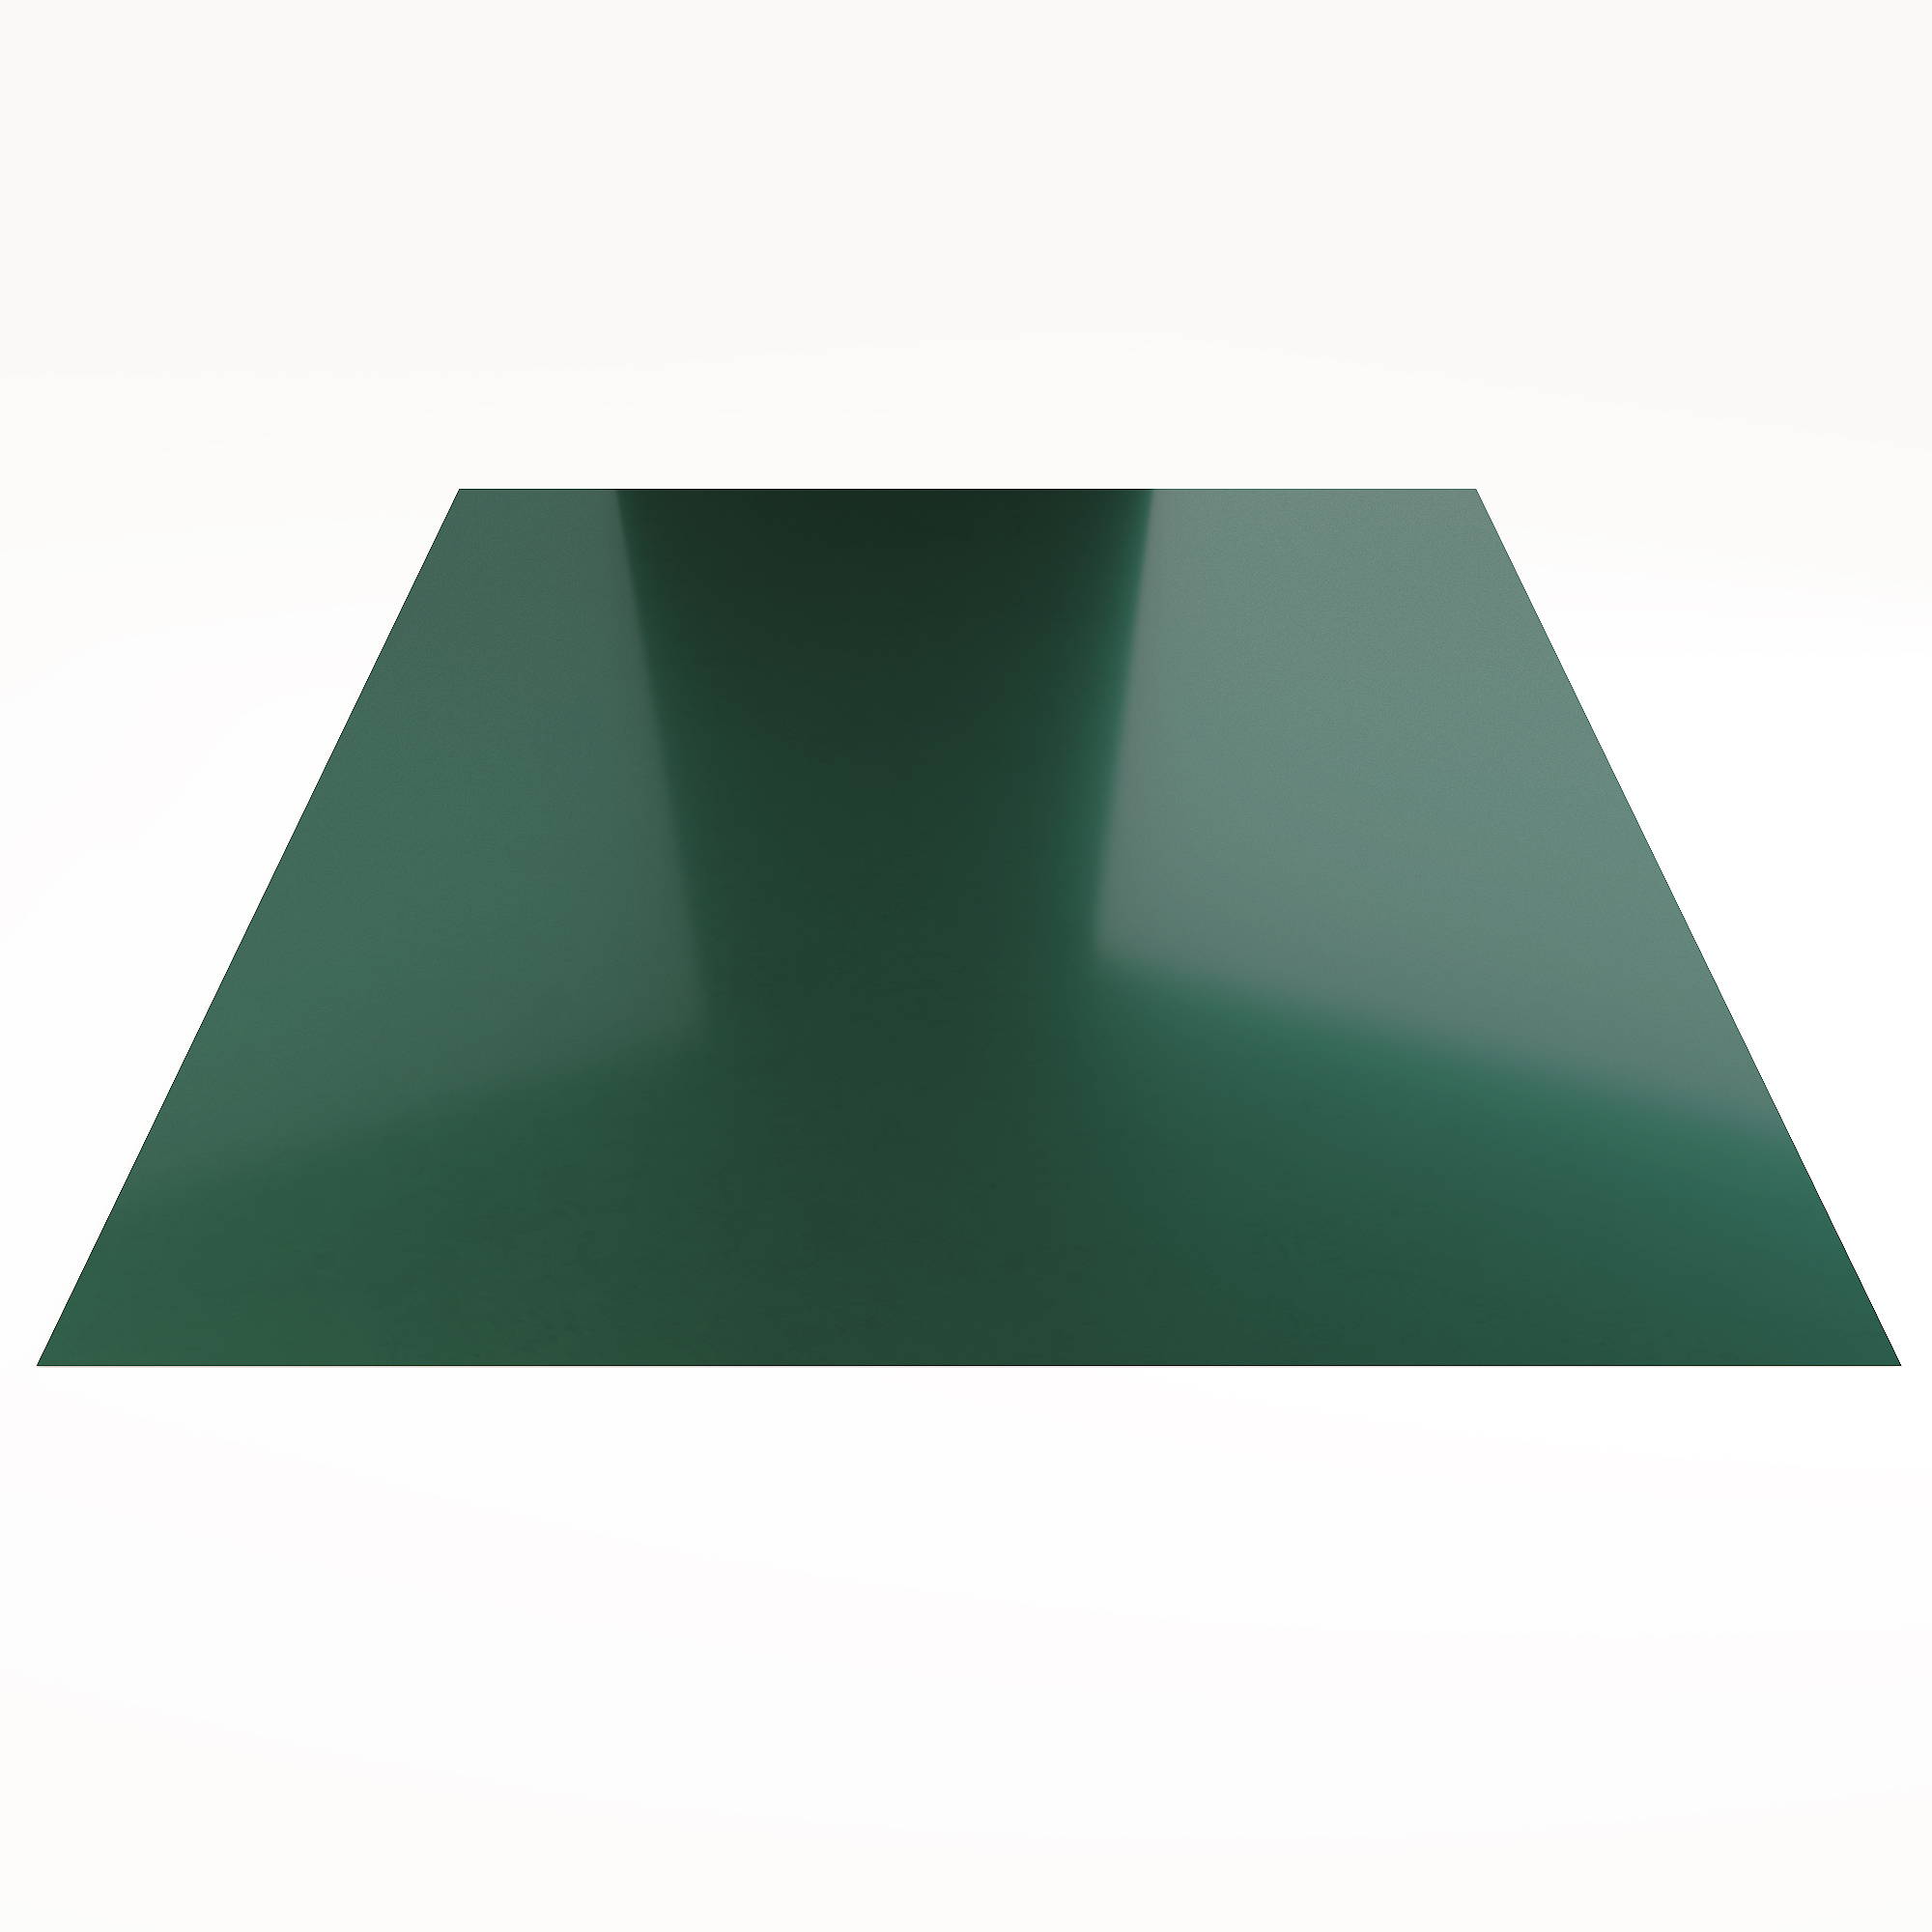 Гладкий лист Гладкий полиэстер RAL 6005 (Зелёный мох) 2500*1250*0,3 односторонний ламинированный